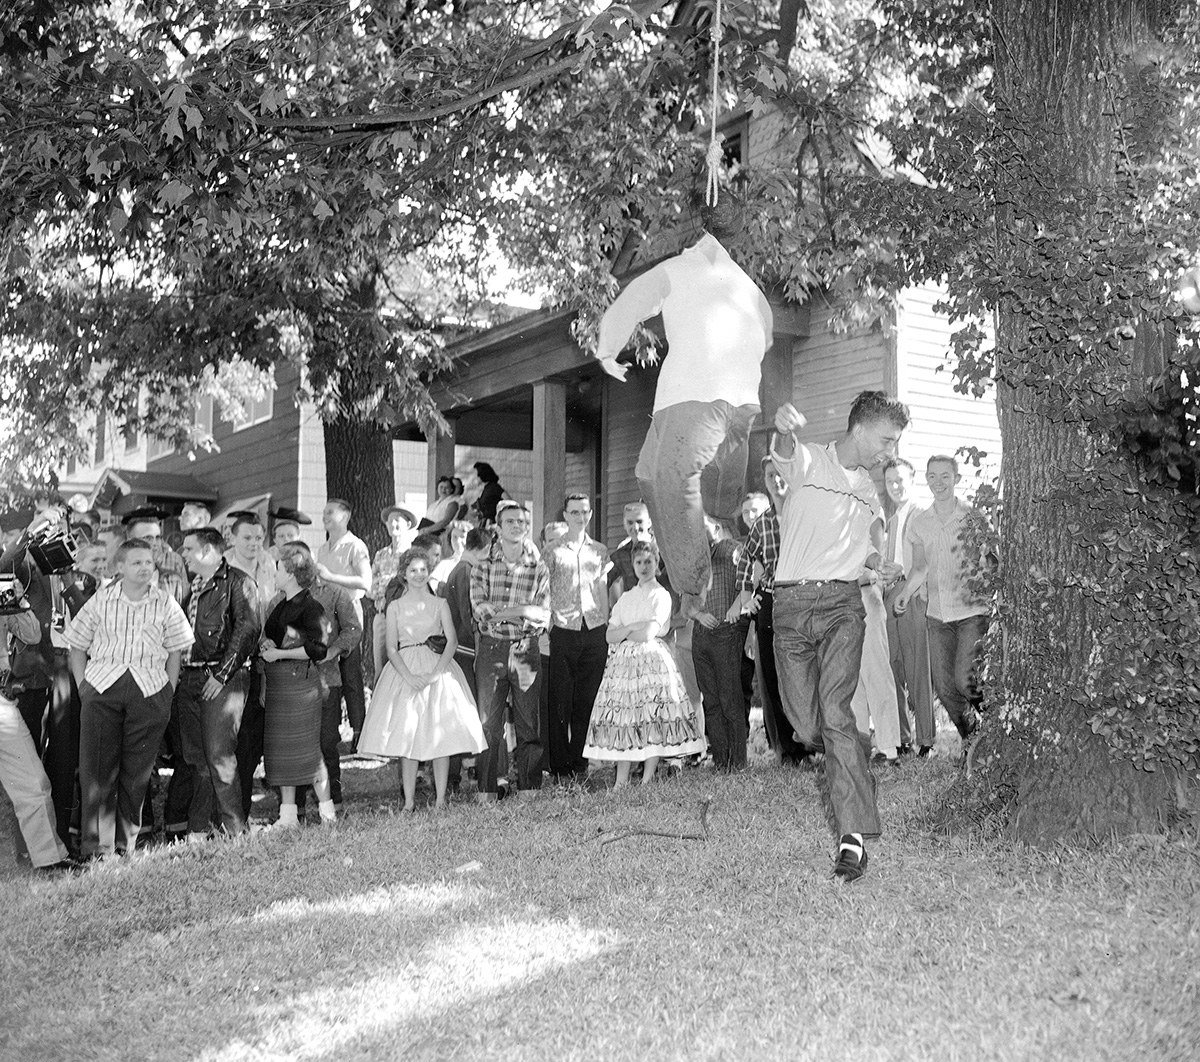 書肆ゲンシシャ 幻視者の集い 吊るされた黒人の人形を殴る白人の生徒たち 1957年 リトルロック高校事件では 公立の学校において白人と黒人の分離教育が違憲となり 同じ学校に通う融合教育化が進められたところ 白人の反発に遭い 黒人は軍の護衛